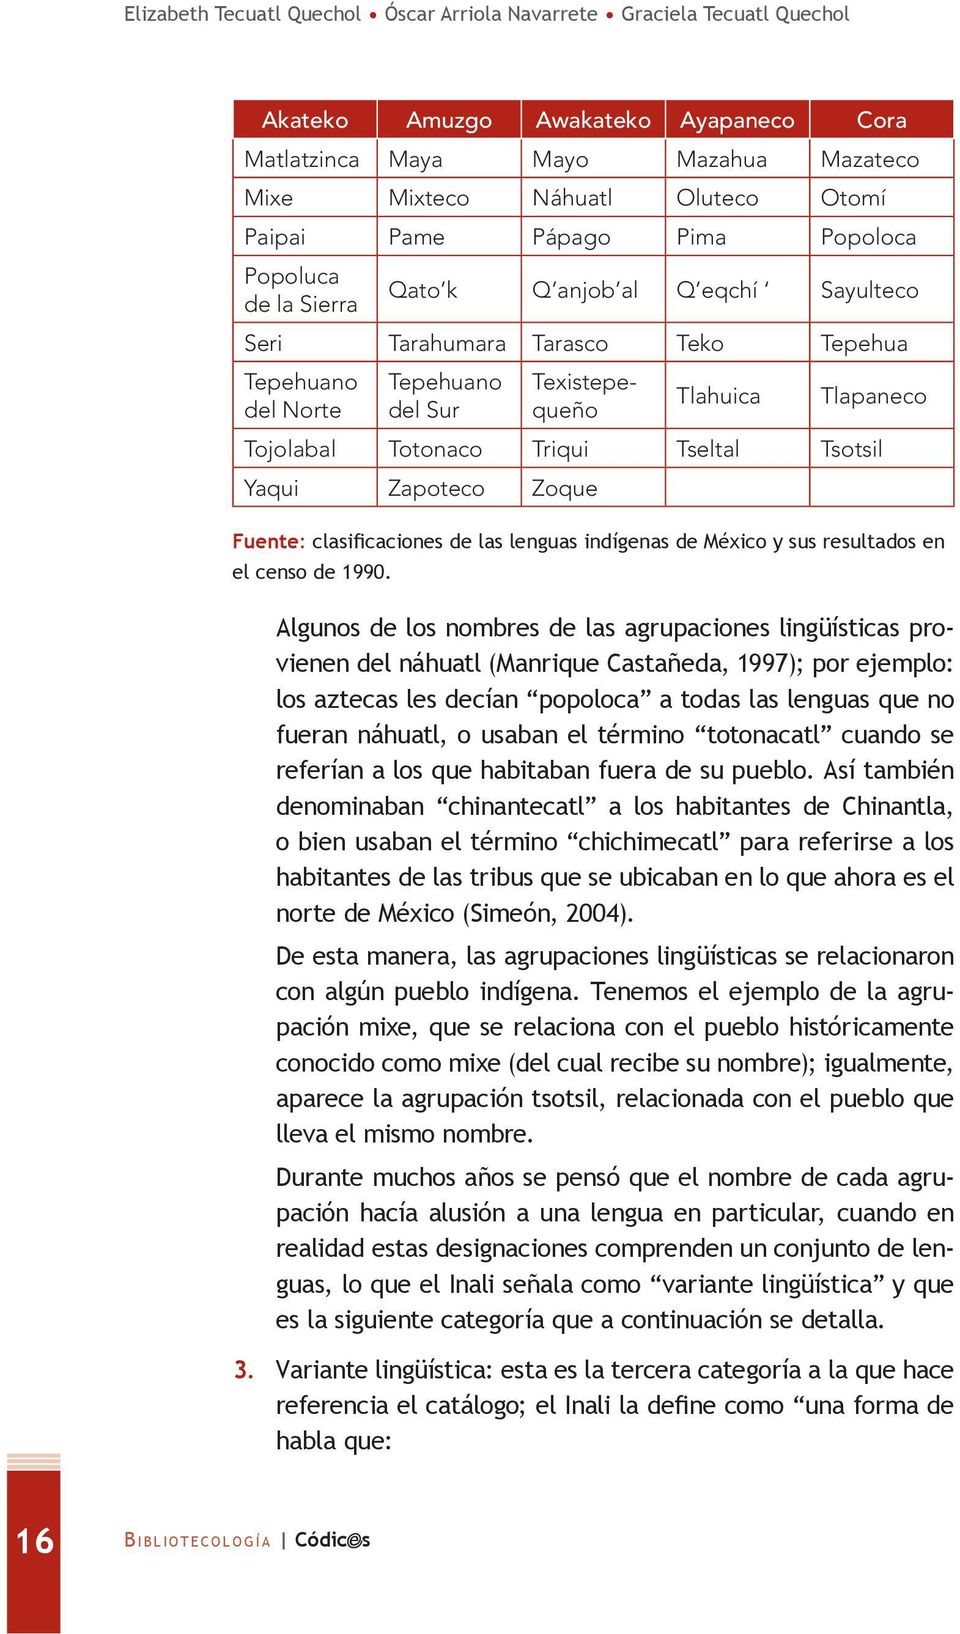 Tojolabal Totonaco Triqui Tseltal Tsotsil Yaqui Zapoteco Zoque Fuente: clasificaciones de las lenguas indígenas de México y sus resultados en el censo de 1990.